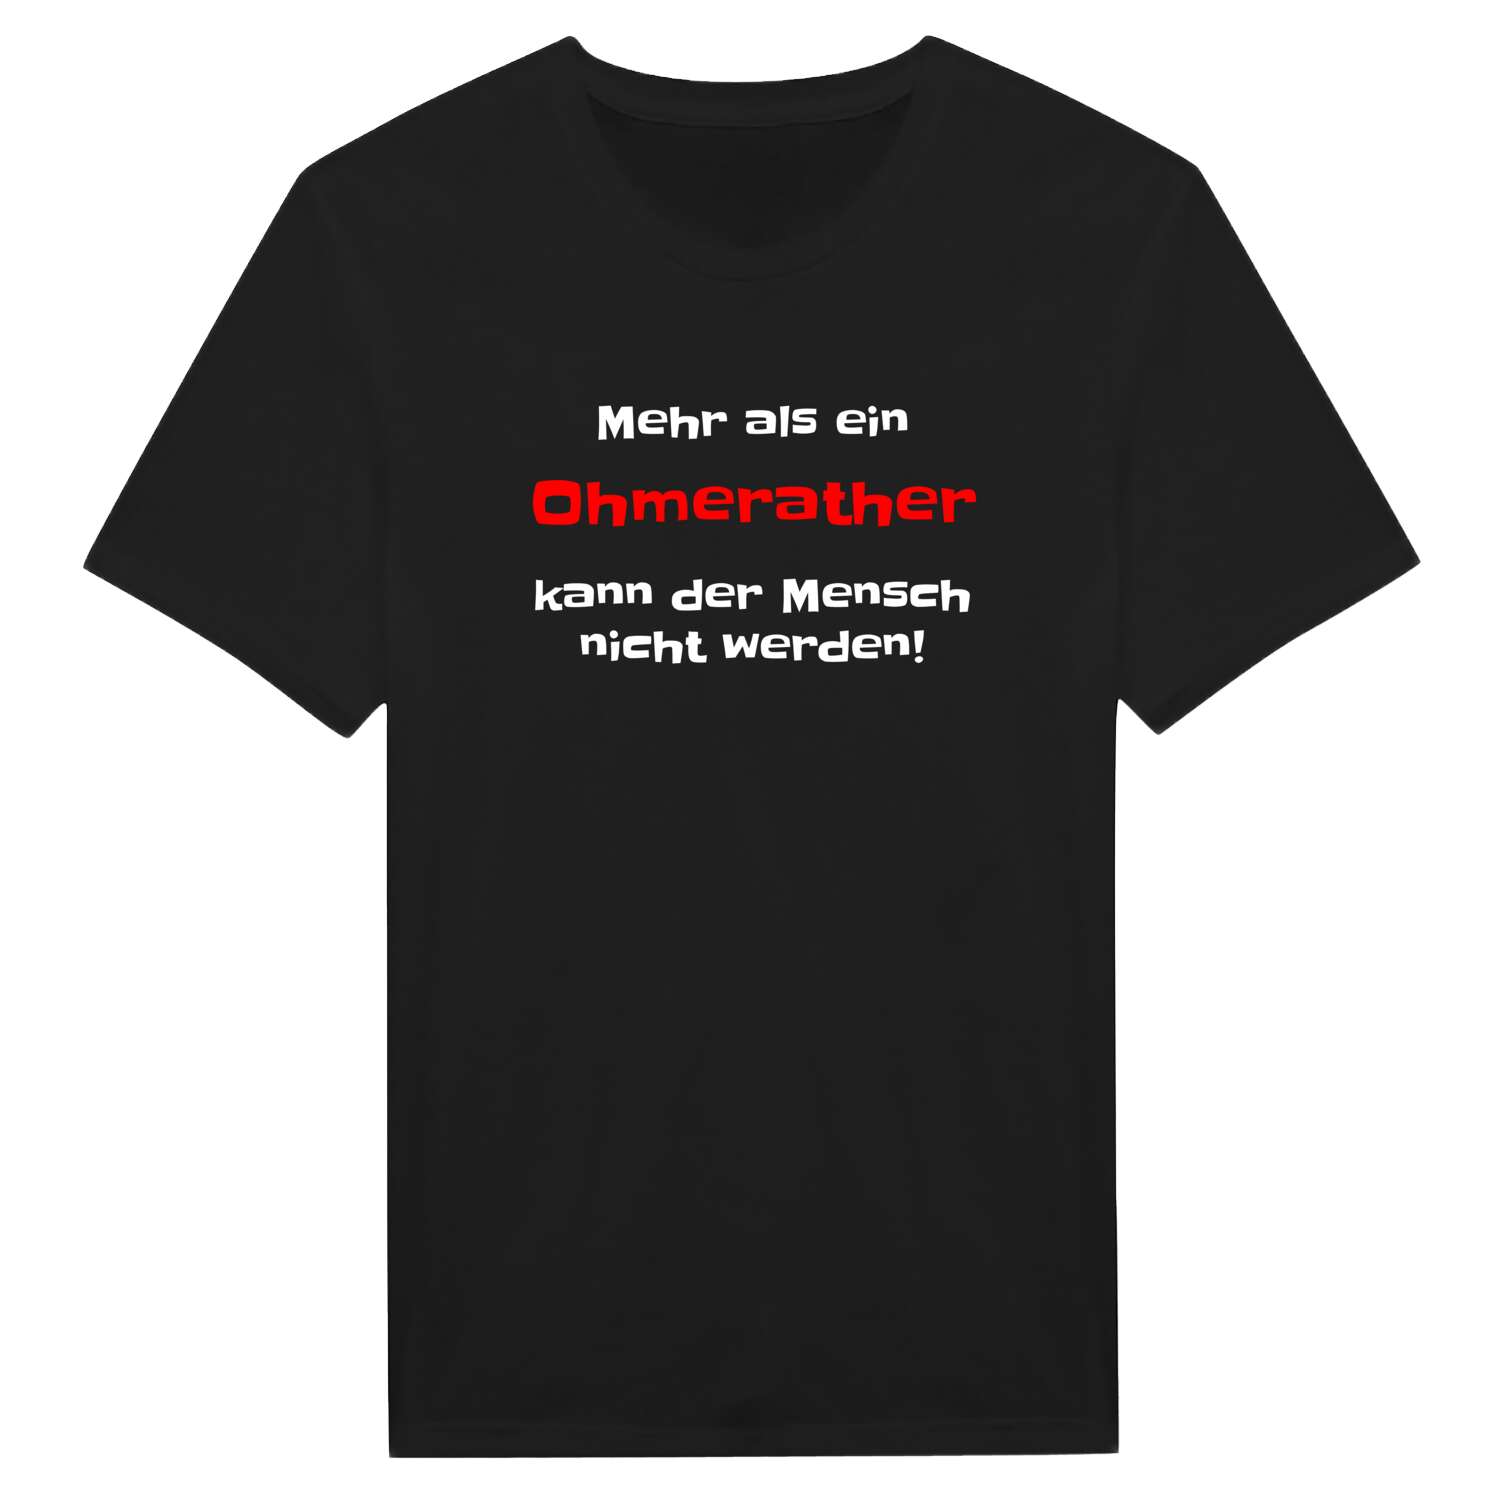 Ohmerath T-Shirt »Mehr als ein«